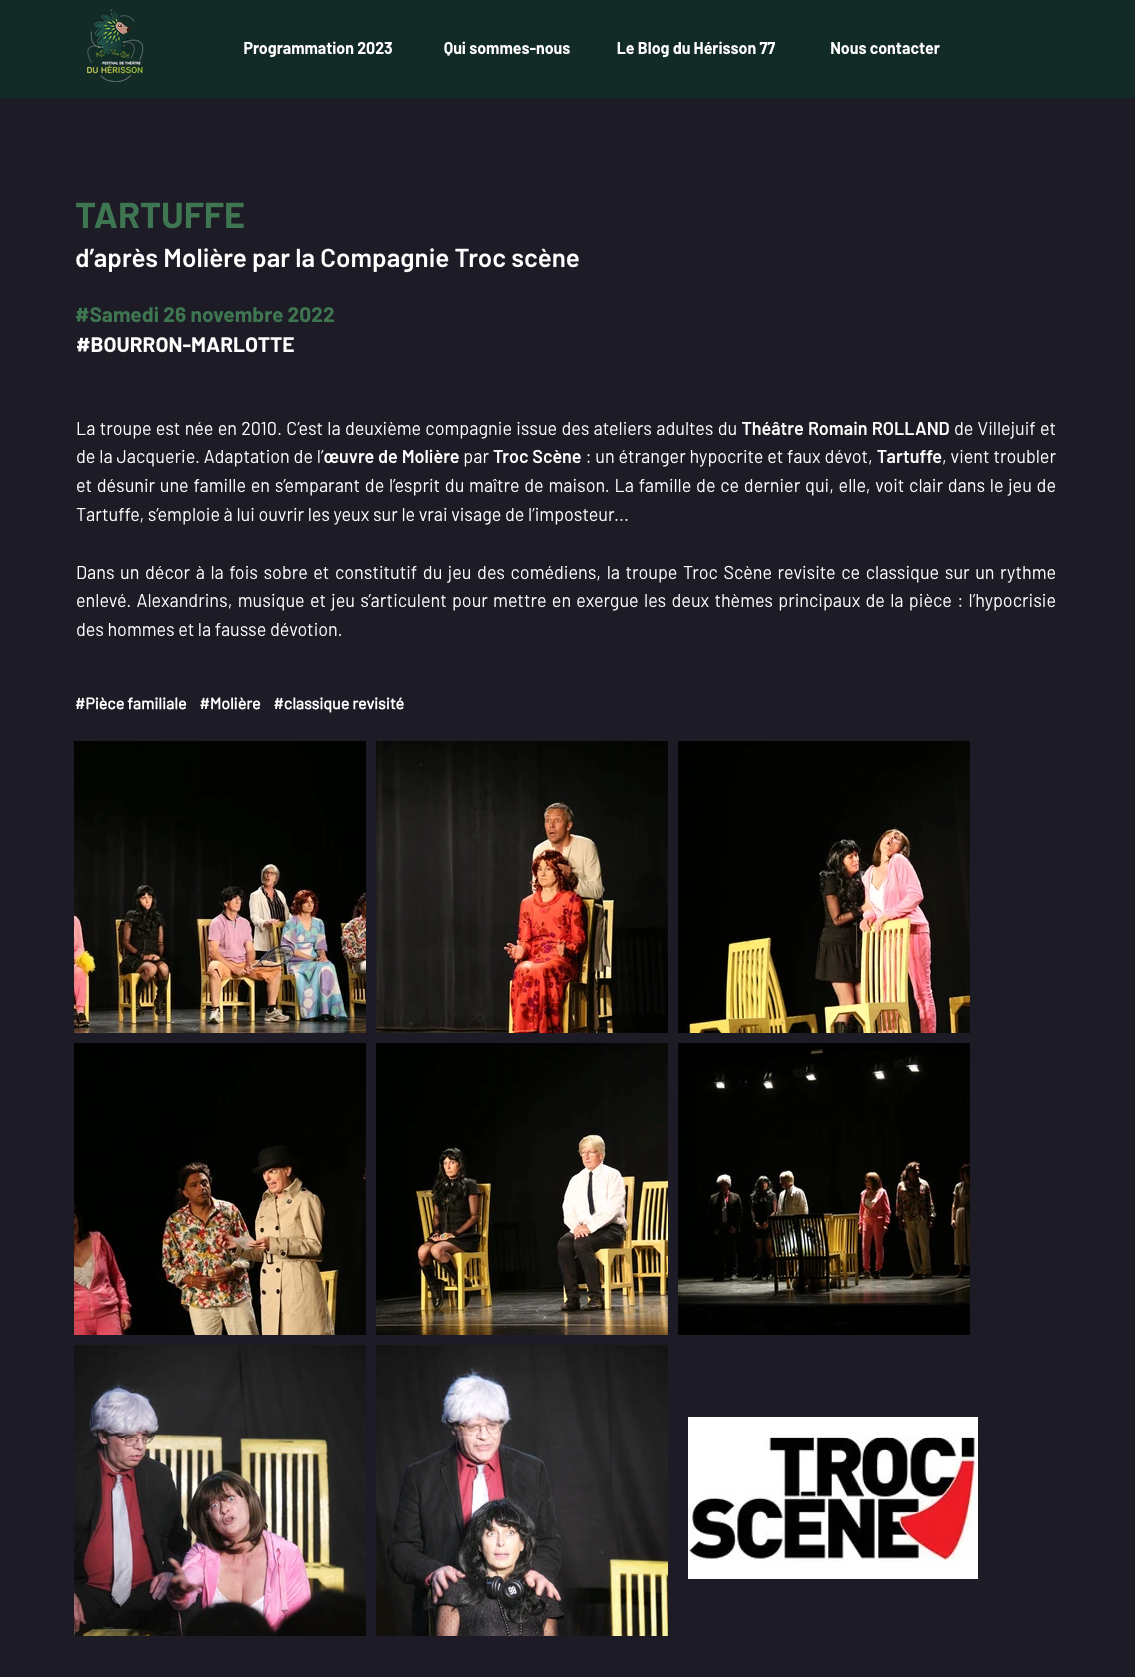 Page de présentation d'une compagnie de Théâtre (photos de la représentation et textes) pour le Festival de Théâtre du Hérisson. Sur fond noir.